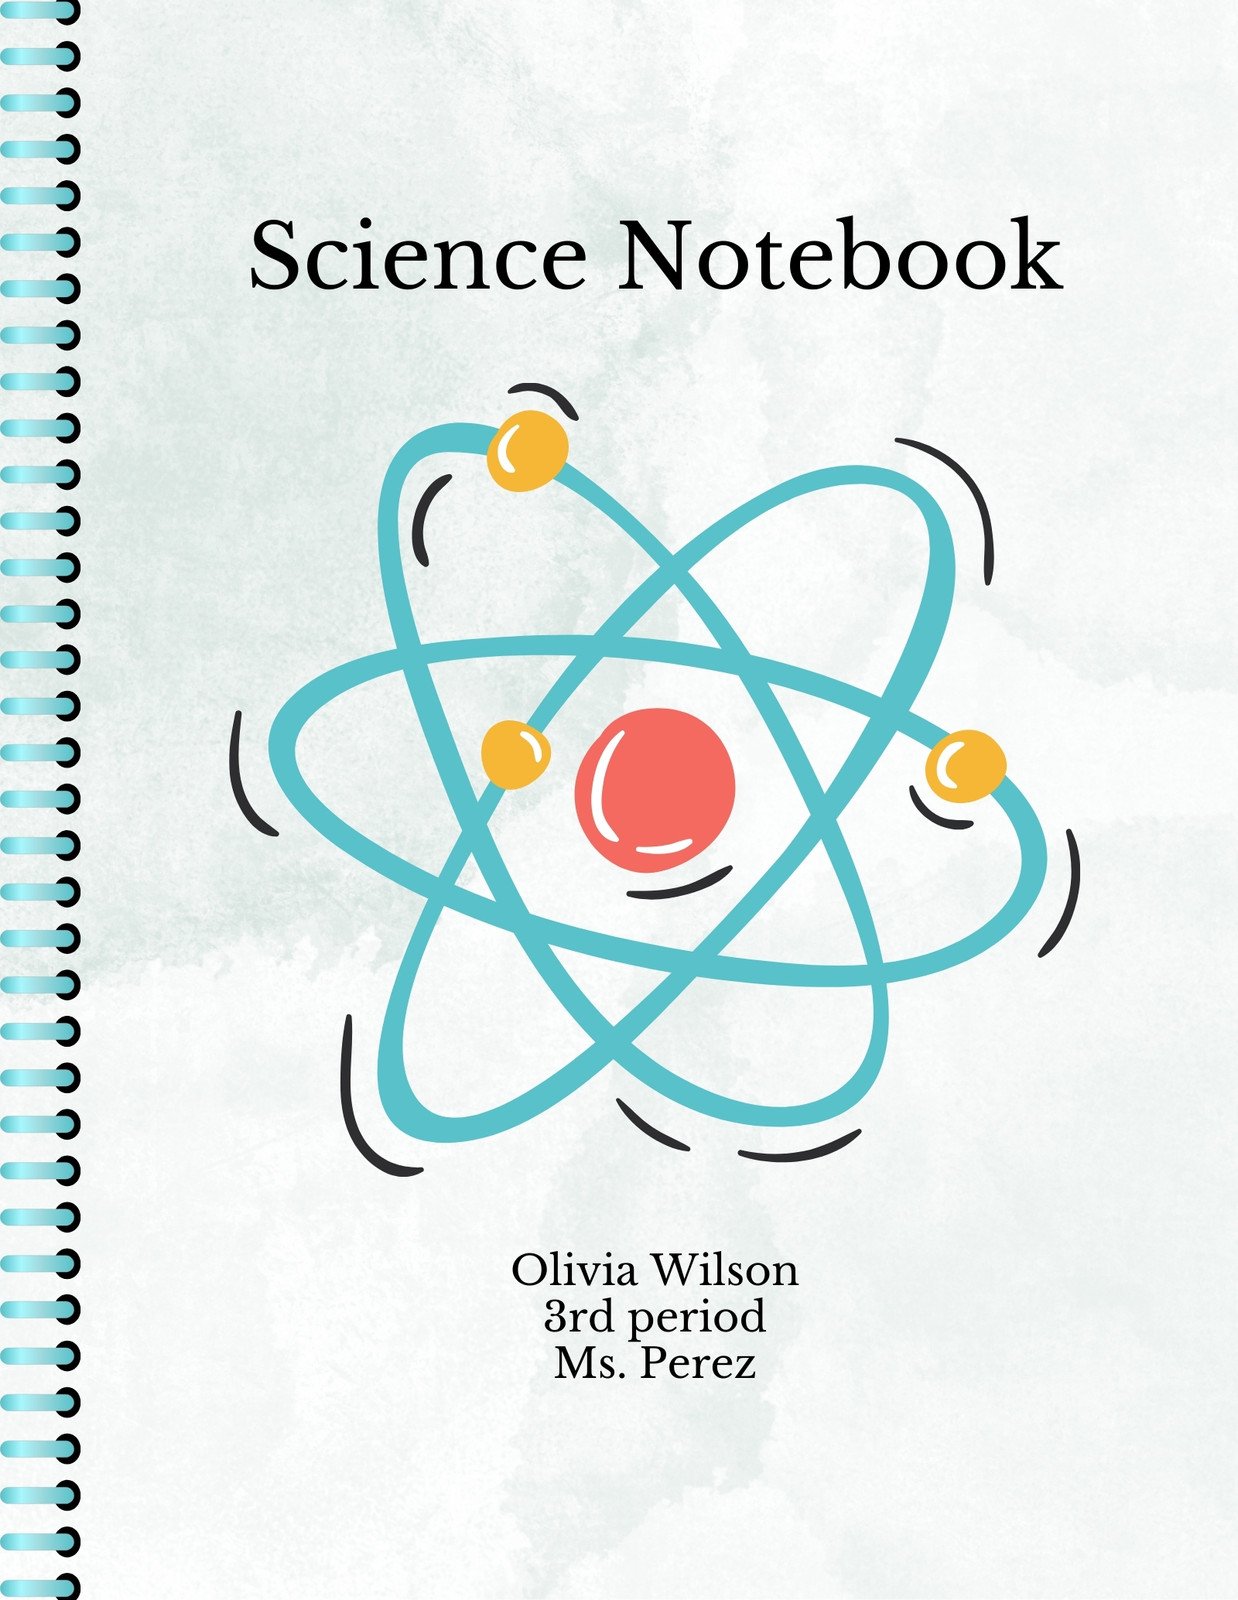 cute science binder covers